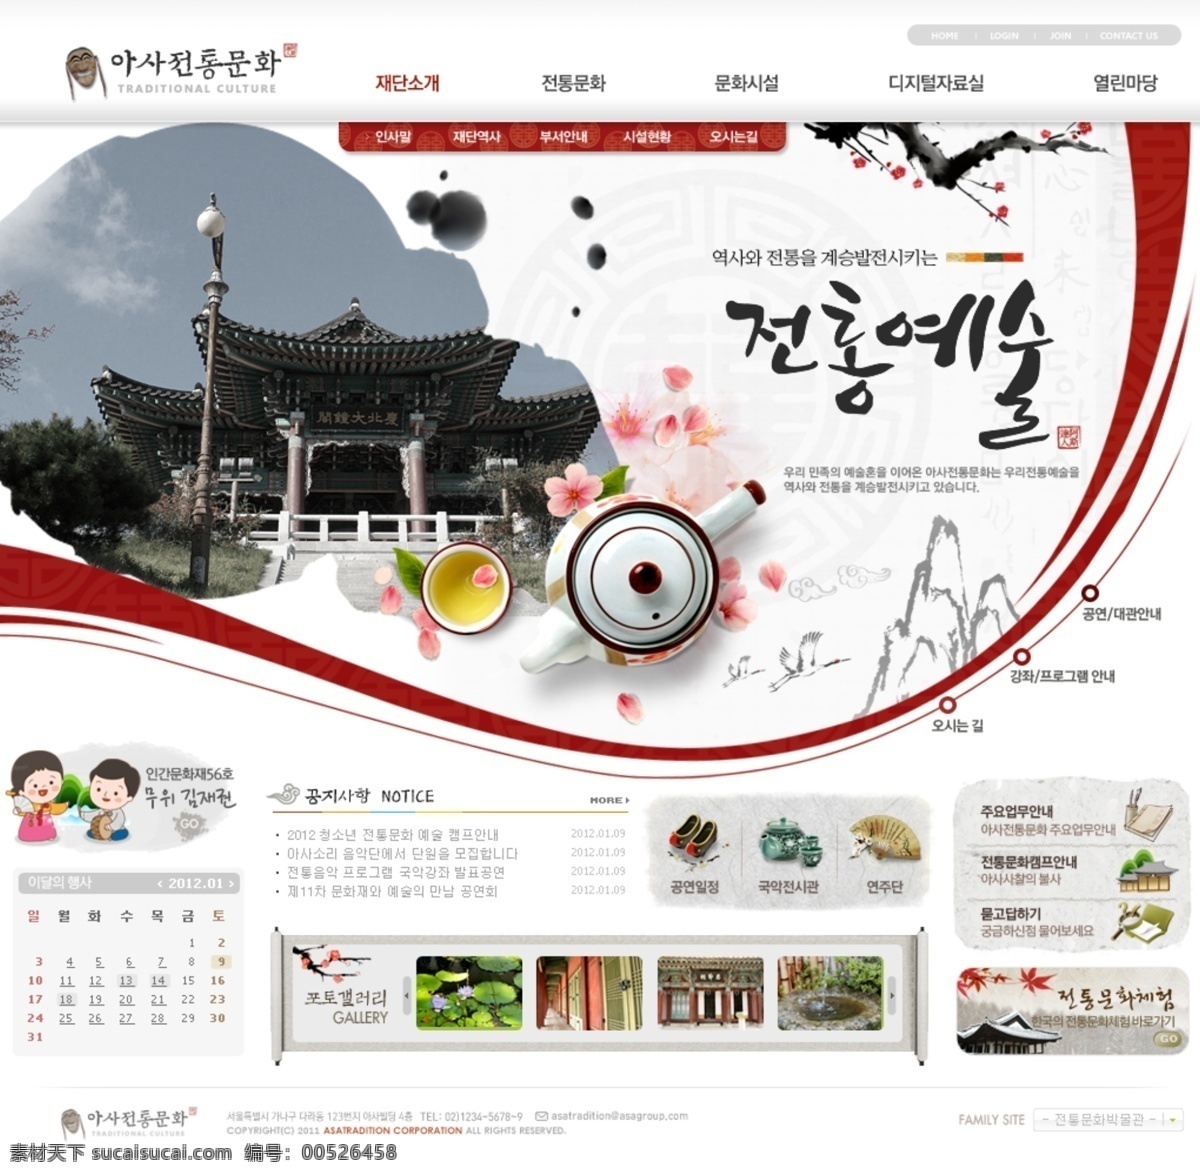 民间艺术团 网页模板 古典 韩国风格 韩国模板 民间 艺术 源文件 网页素材